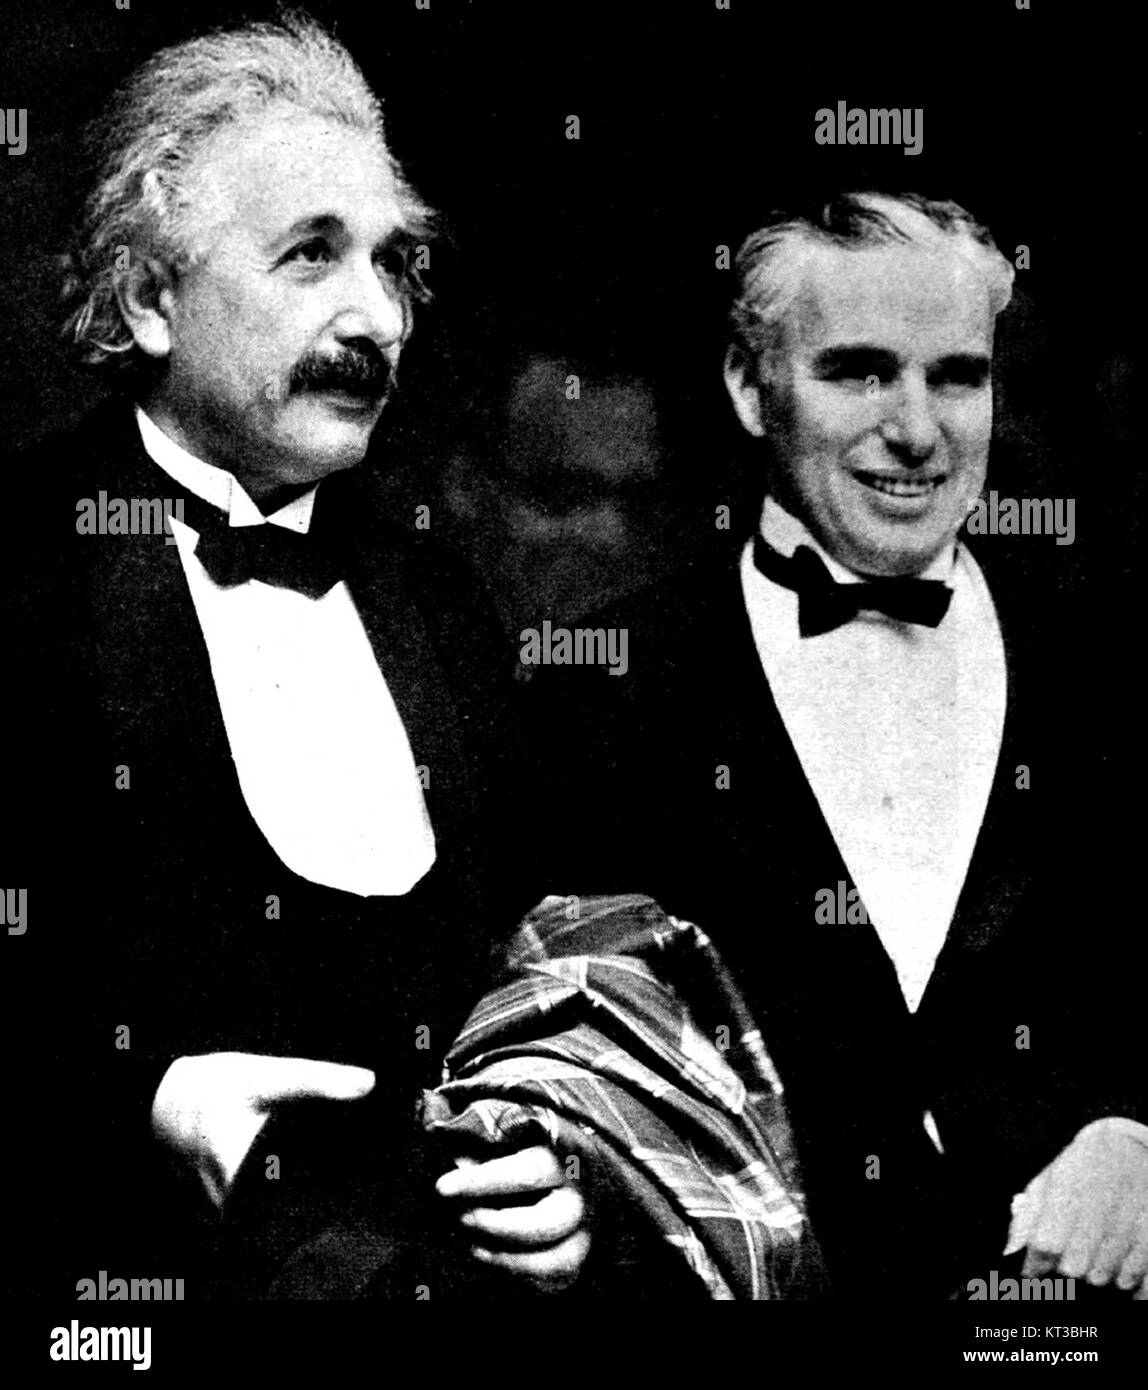 Albert Einstein and Charlie Chaplin - 1931 Stock Photo